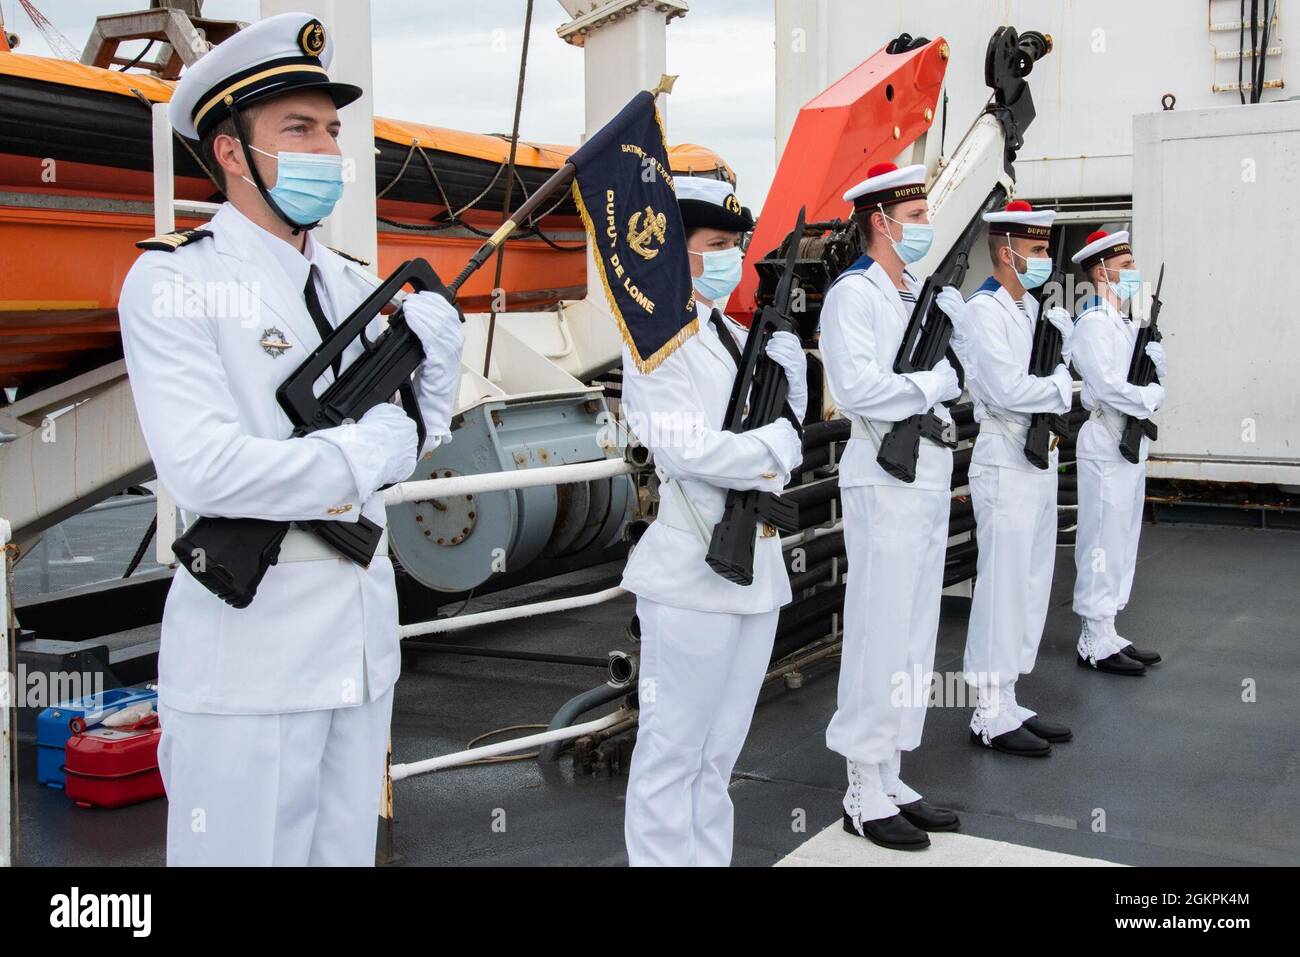 210614-N-NS063-1047 YOKOSUKA, Japón (14 de junio de 2021) - Enmando oficial de un buque de guerra francés saluda a los miembros de su tripulación con Phillipe Setton, embajador francés durante una gira del buque en el Comandante, Actividades de la Flota Yokosuka (CFAY). El buque naval francés visitaba el CFAY en virtud del Acuerdo de las Naciones Unidas y el Gobierno del Japón sobre el Estatuto de las Fuerzas, para impartir capacitación y enlace con el Mando de las Naciones Unidas Foto de stock